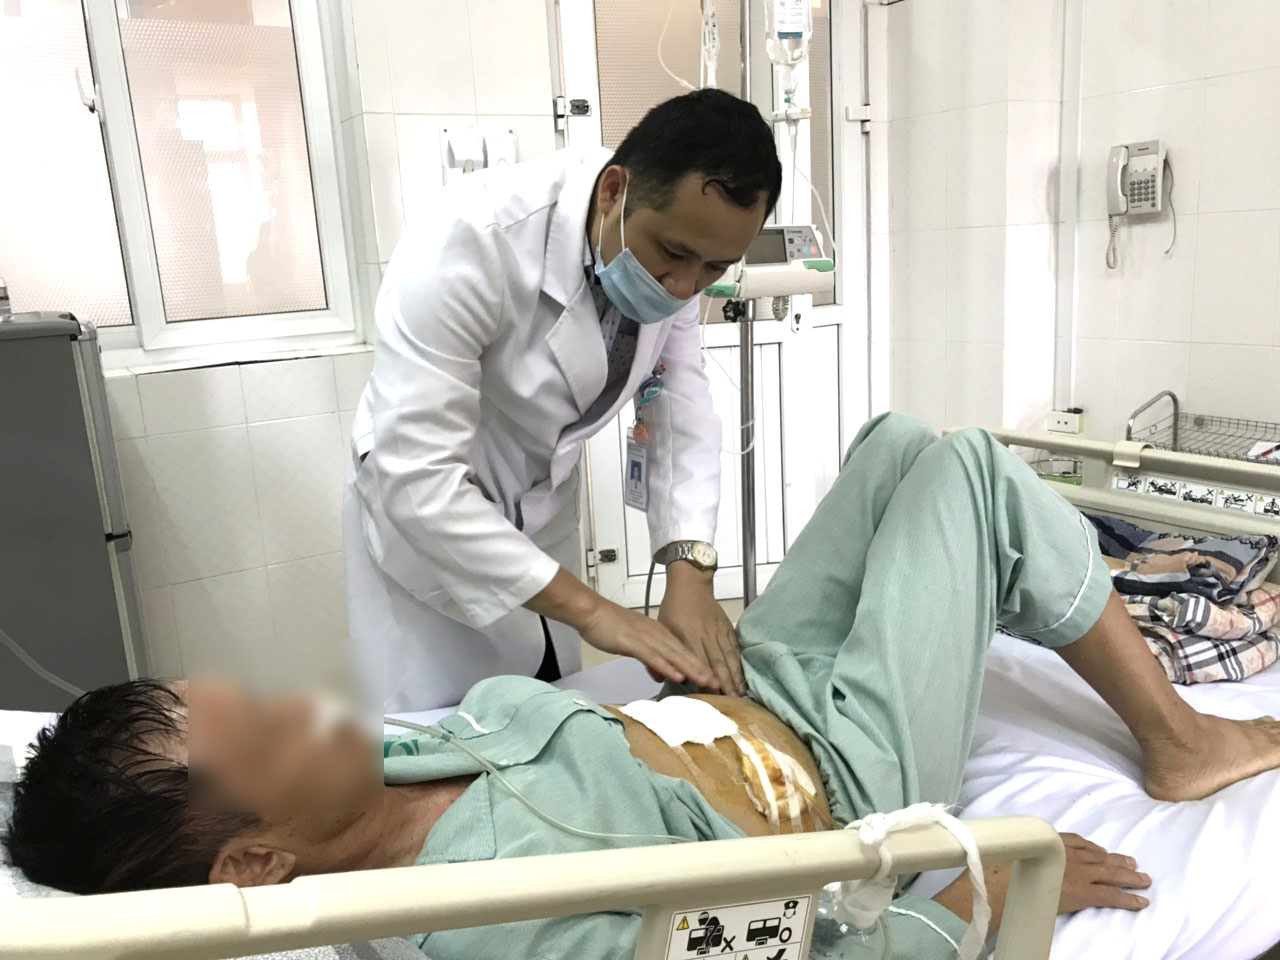 Bác sĩ CKI. Nguyễn Thái Bình – Phó Trưởng Khoa Ngoại, Bệnh viện Bãi Cháy thăm khám cho người bệnh sau phẫu thuật tắc ruột non